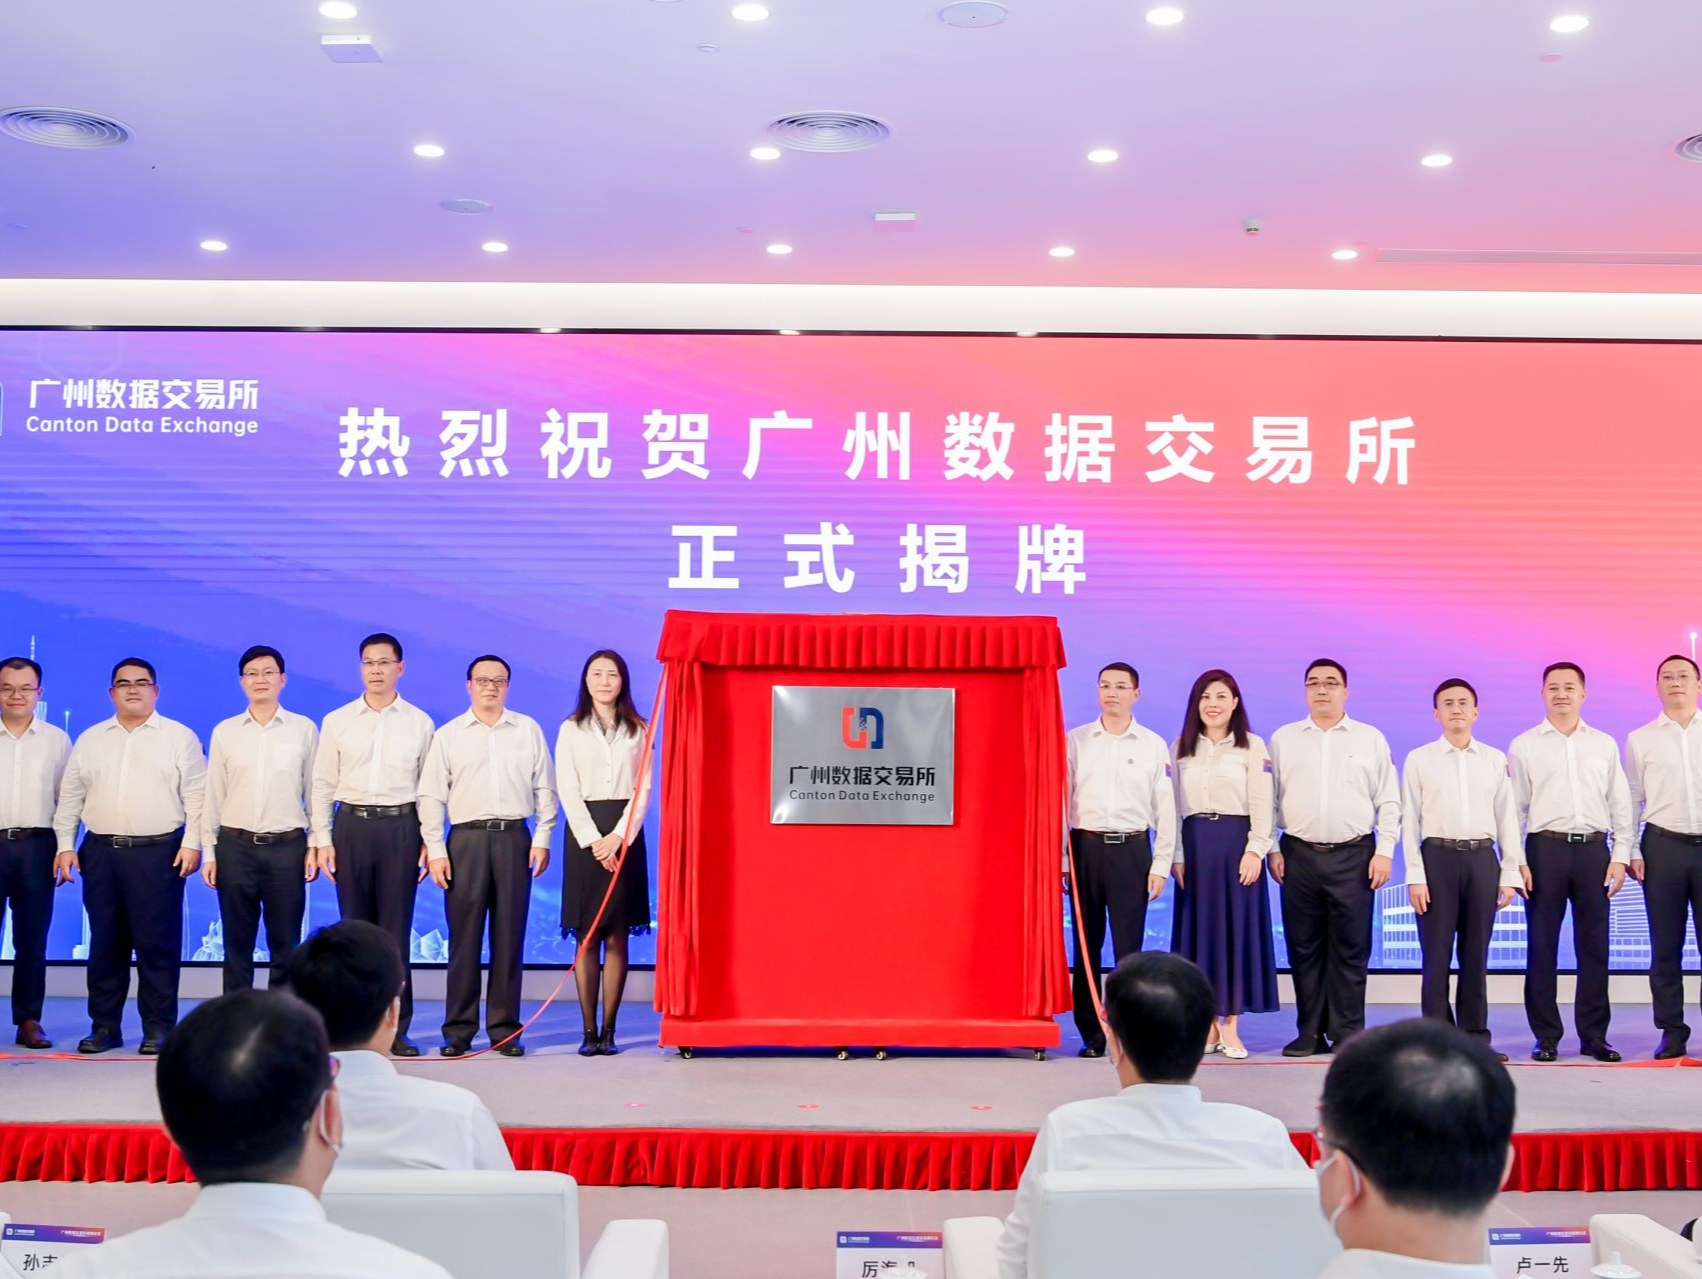 广东省级数据交易机构广州数据交易所揭牌成立，在全国首创数据流通交易全周期服务